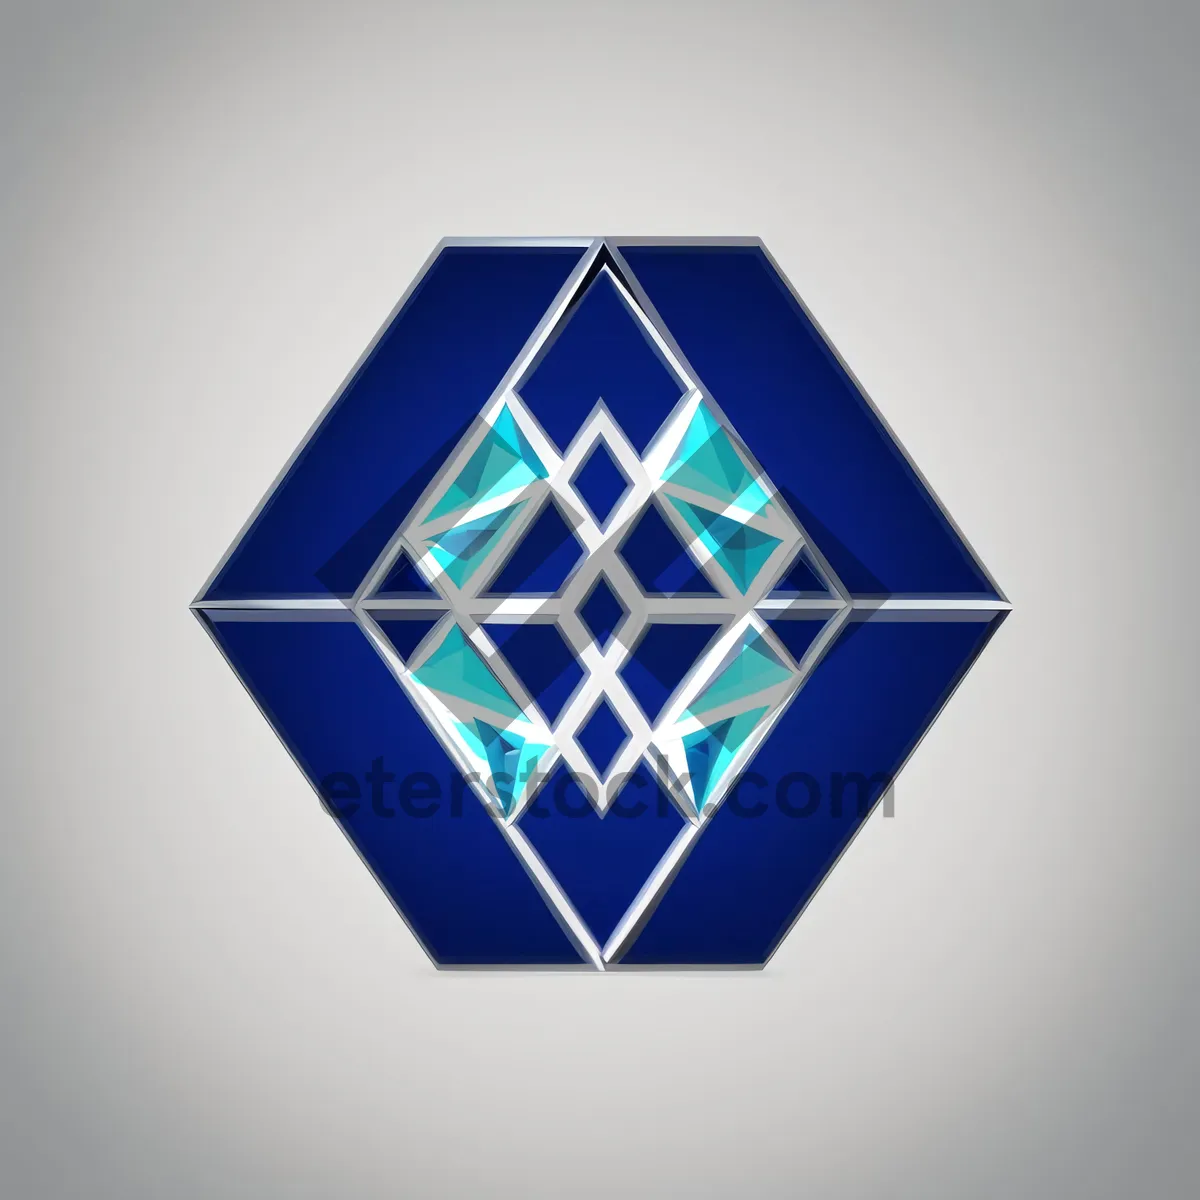 Picture of Diamond Glass Icon: 3D Graphic Web Design Element